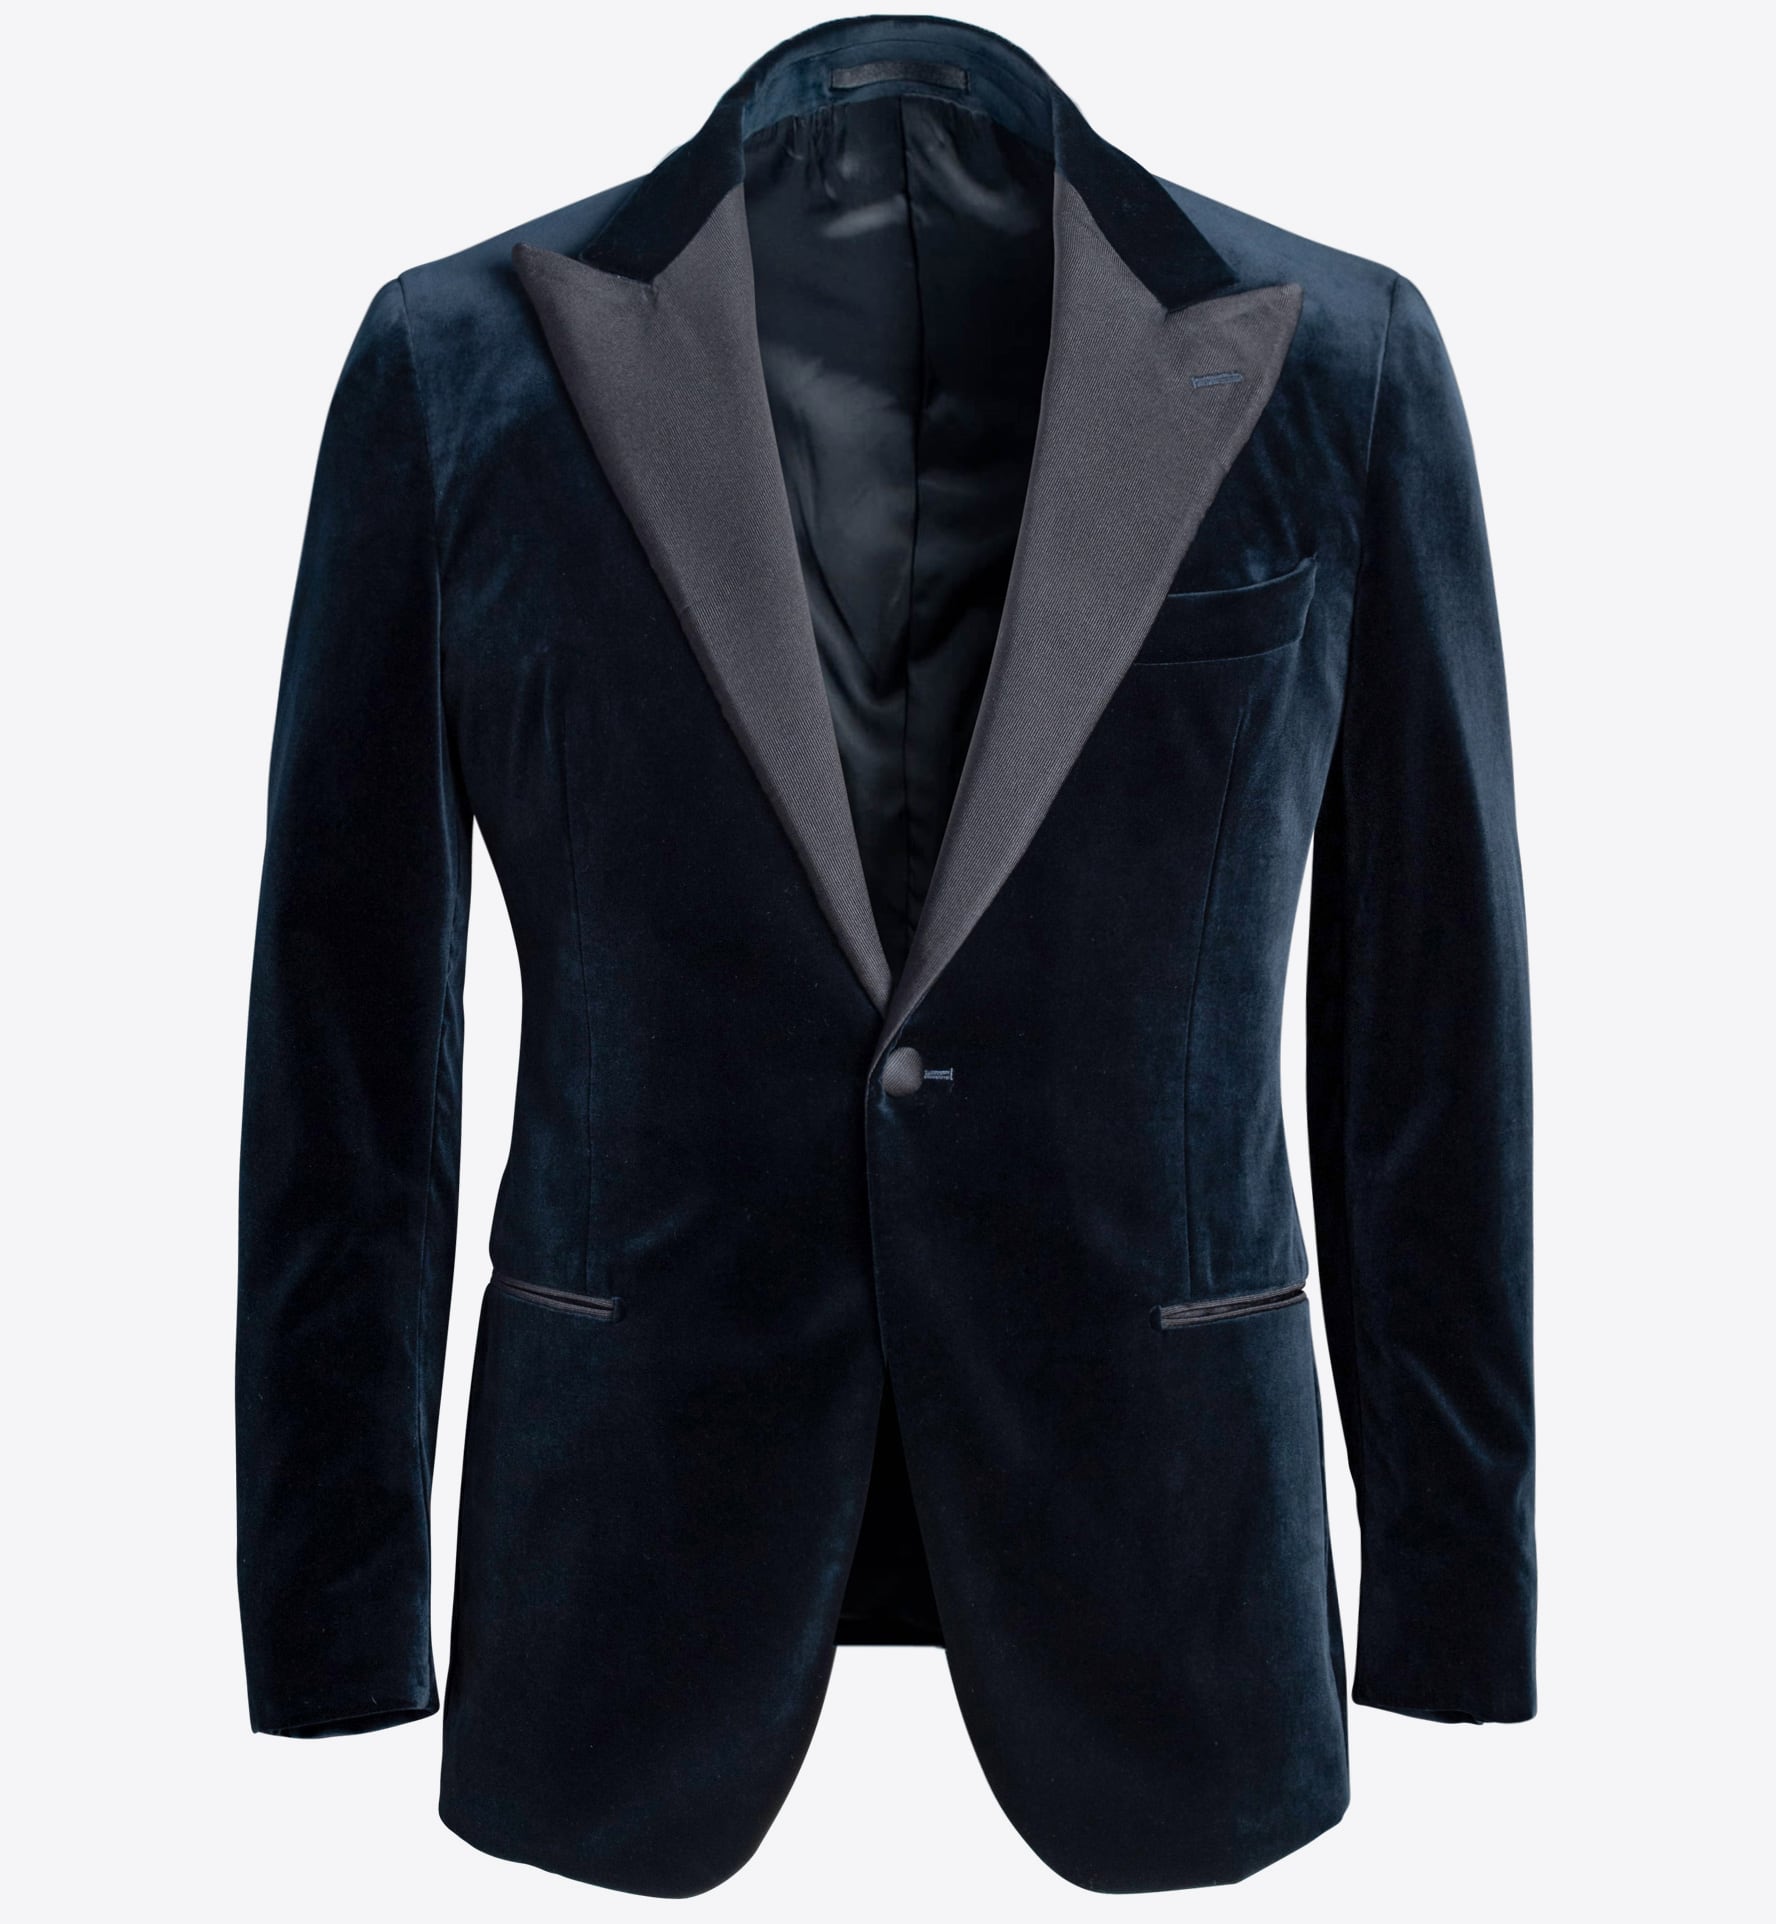 Mayfair Dark Navy Stretch Velvet Dinner Jacket - Custom Fit Tailored ...